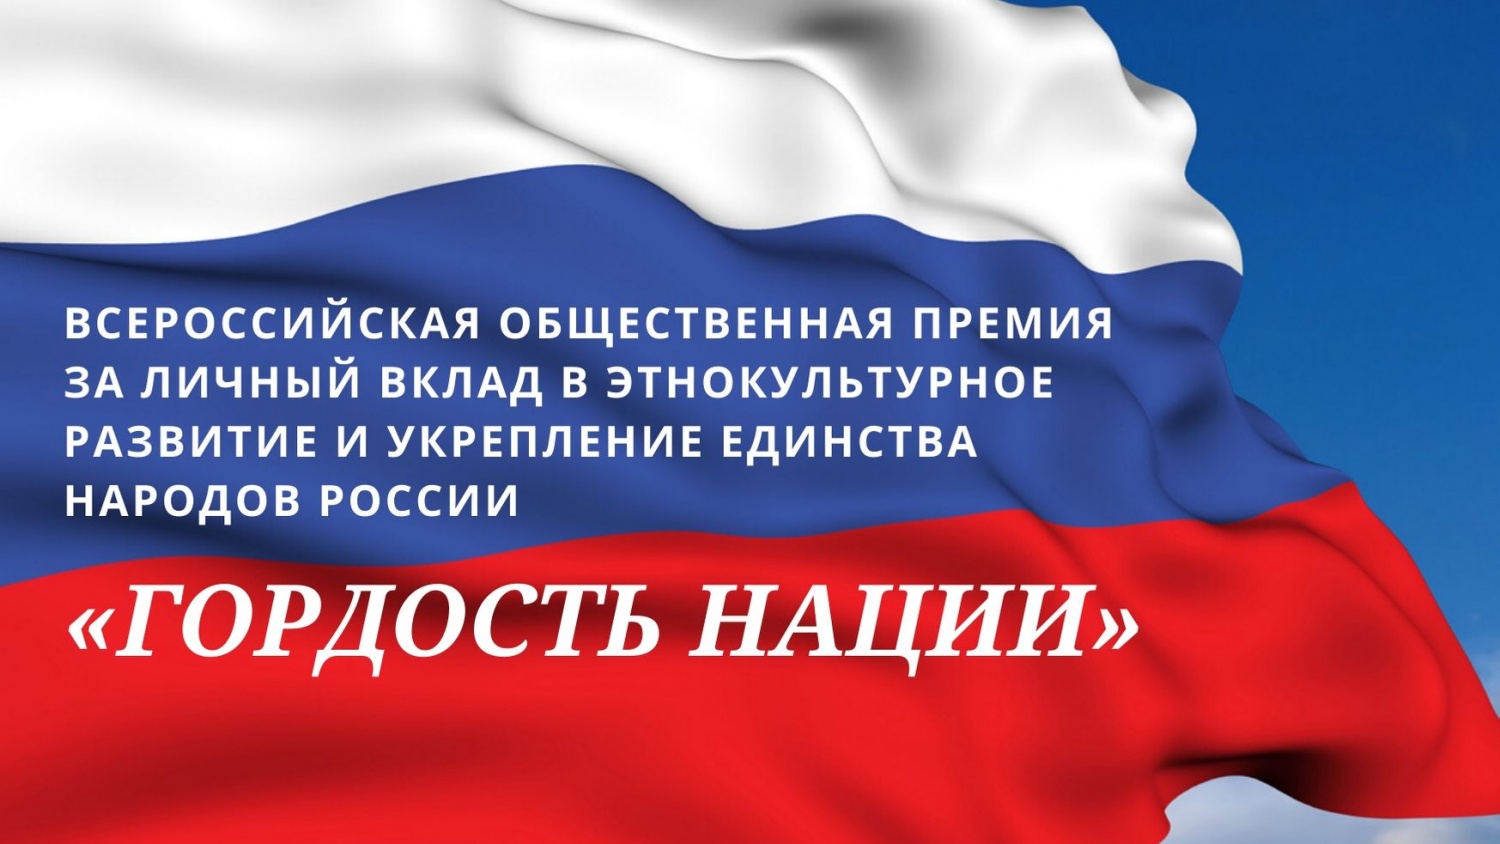 В России учреждена первая Всероссийская общественная премия в этнокультурной сфере